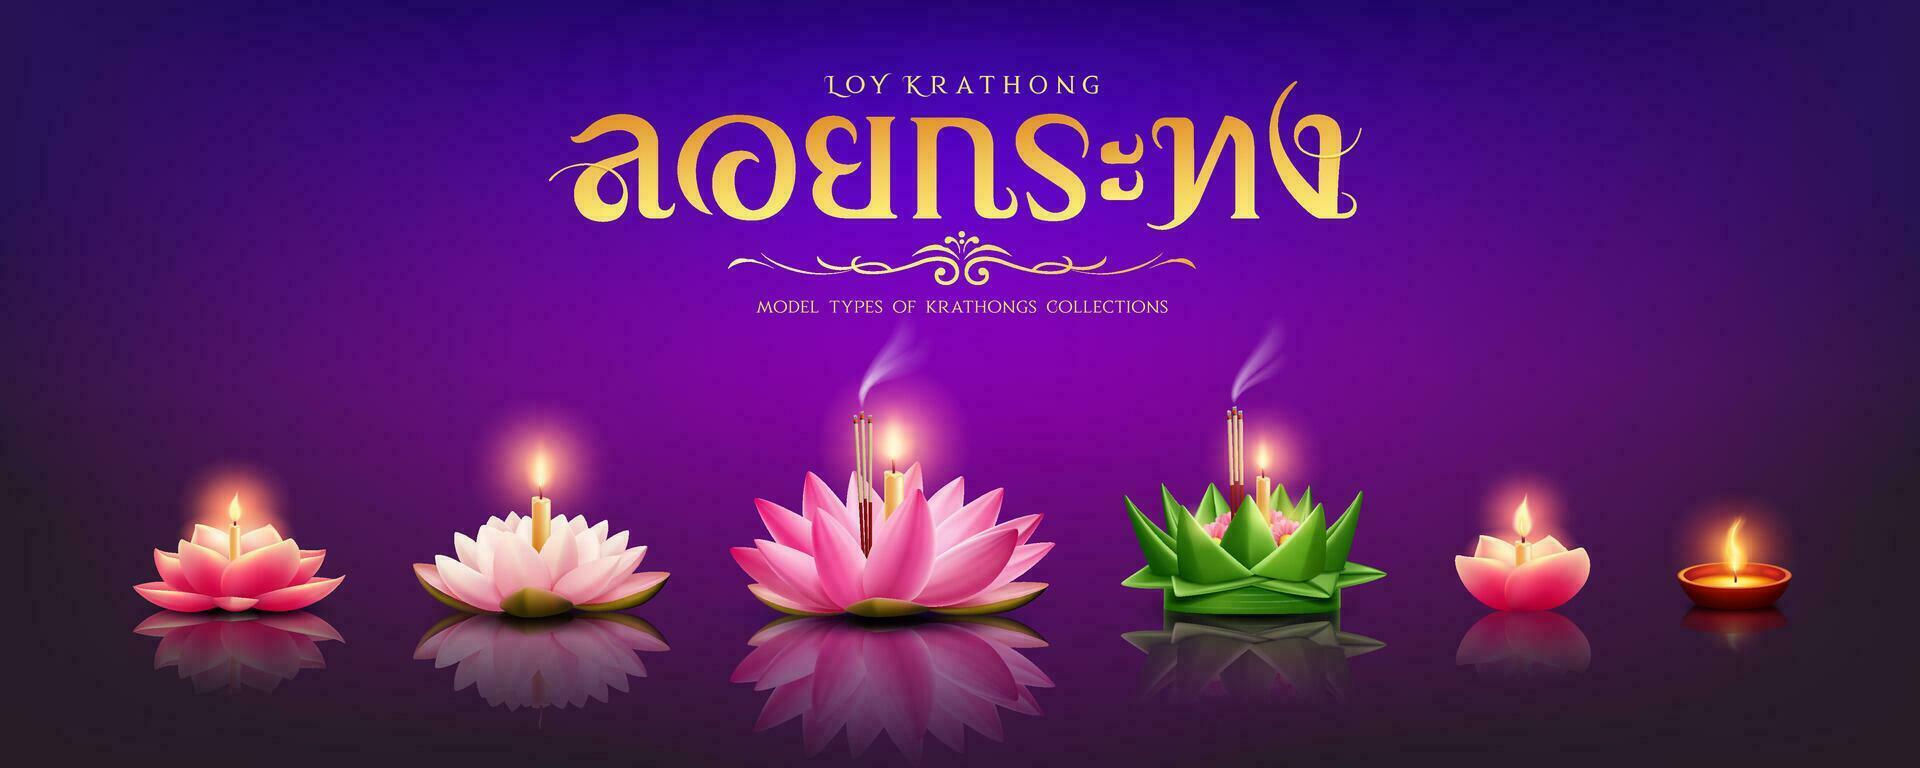 modelo tipos de krathongs colecciones, tailandés cultural tradiciones, tailandés caligrafía de loy krathong rosado y blanco loto flor, plátano hoja, diseño en púrpura fondo, vector ilustración